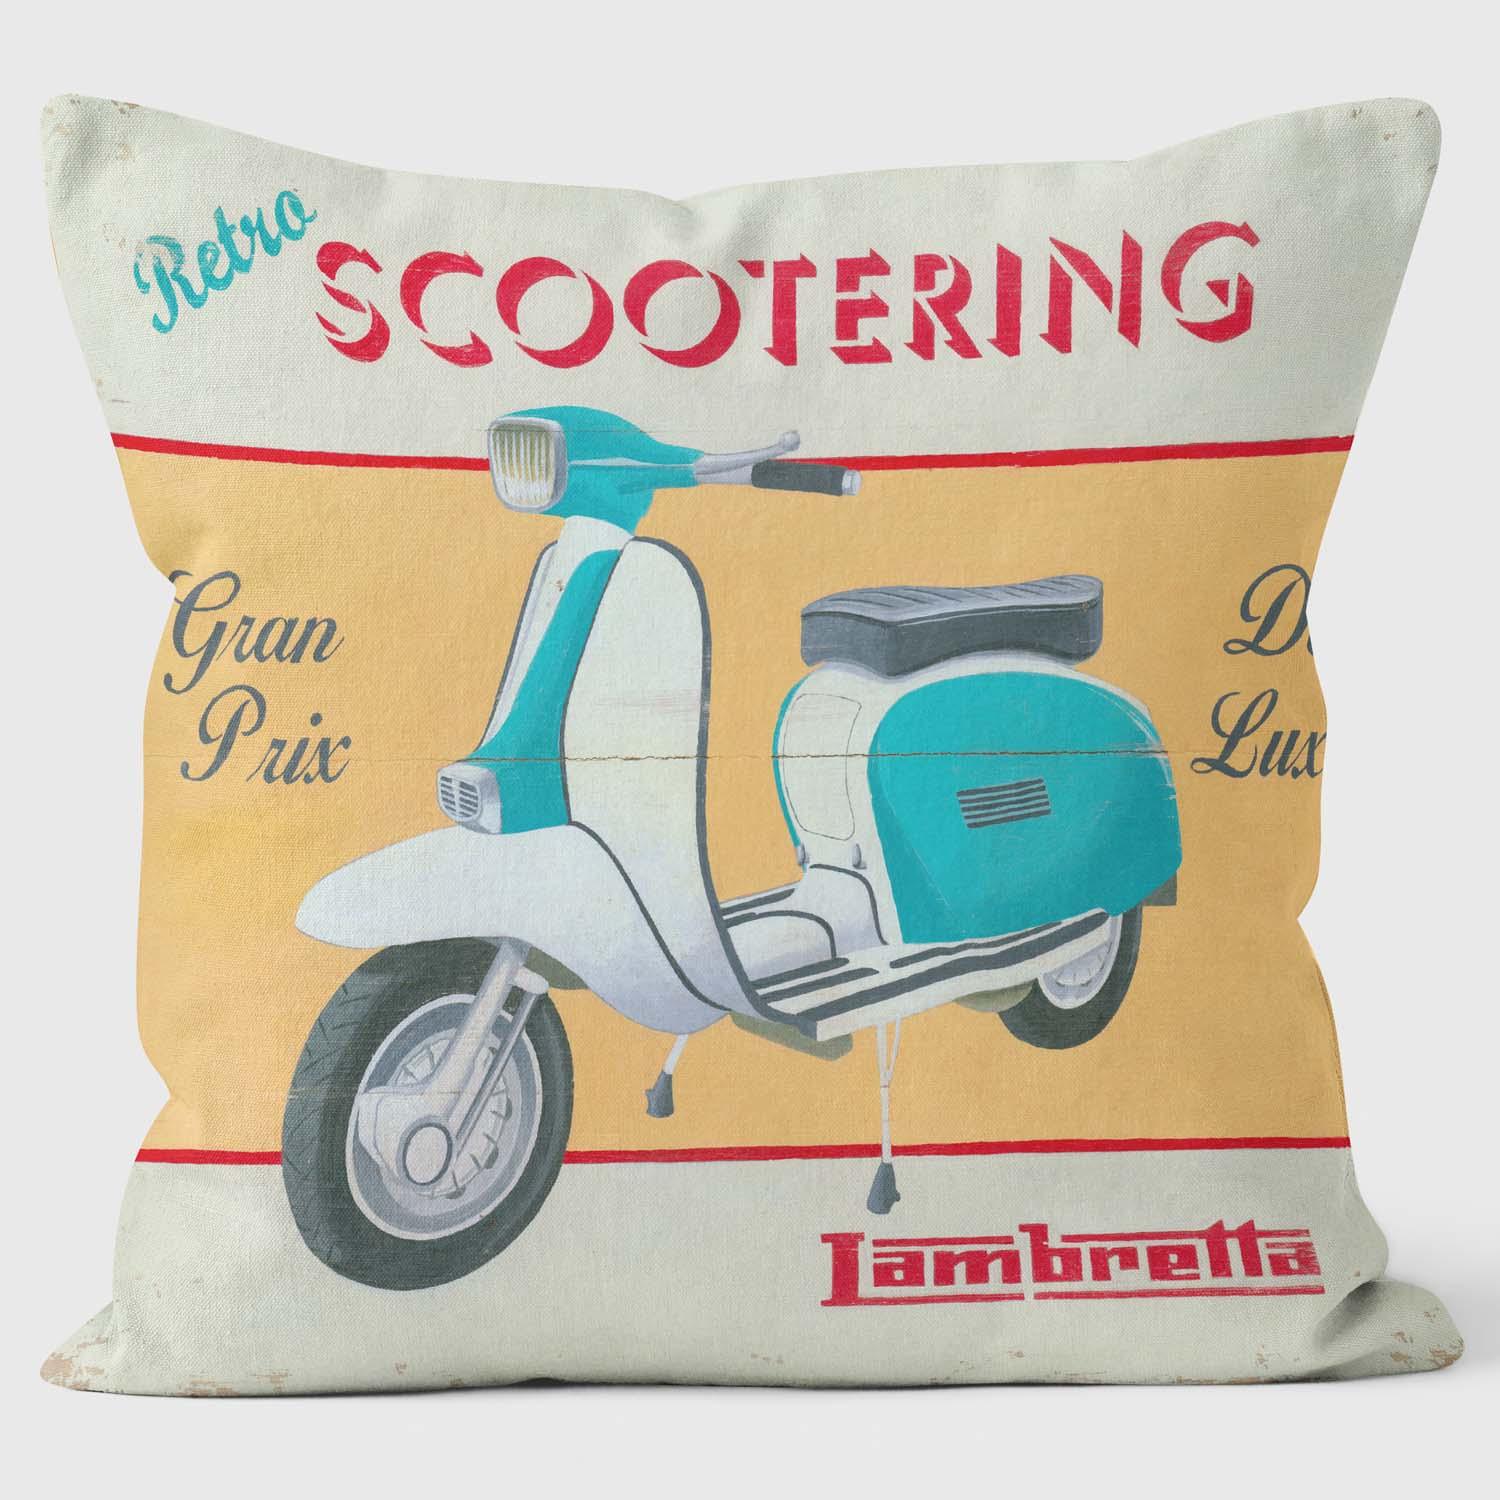 Scootering - Martin Wiscombe - Art Print Cushion - Handmade Cushions UK - WeLoveCushions